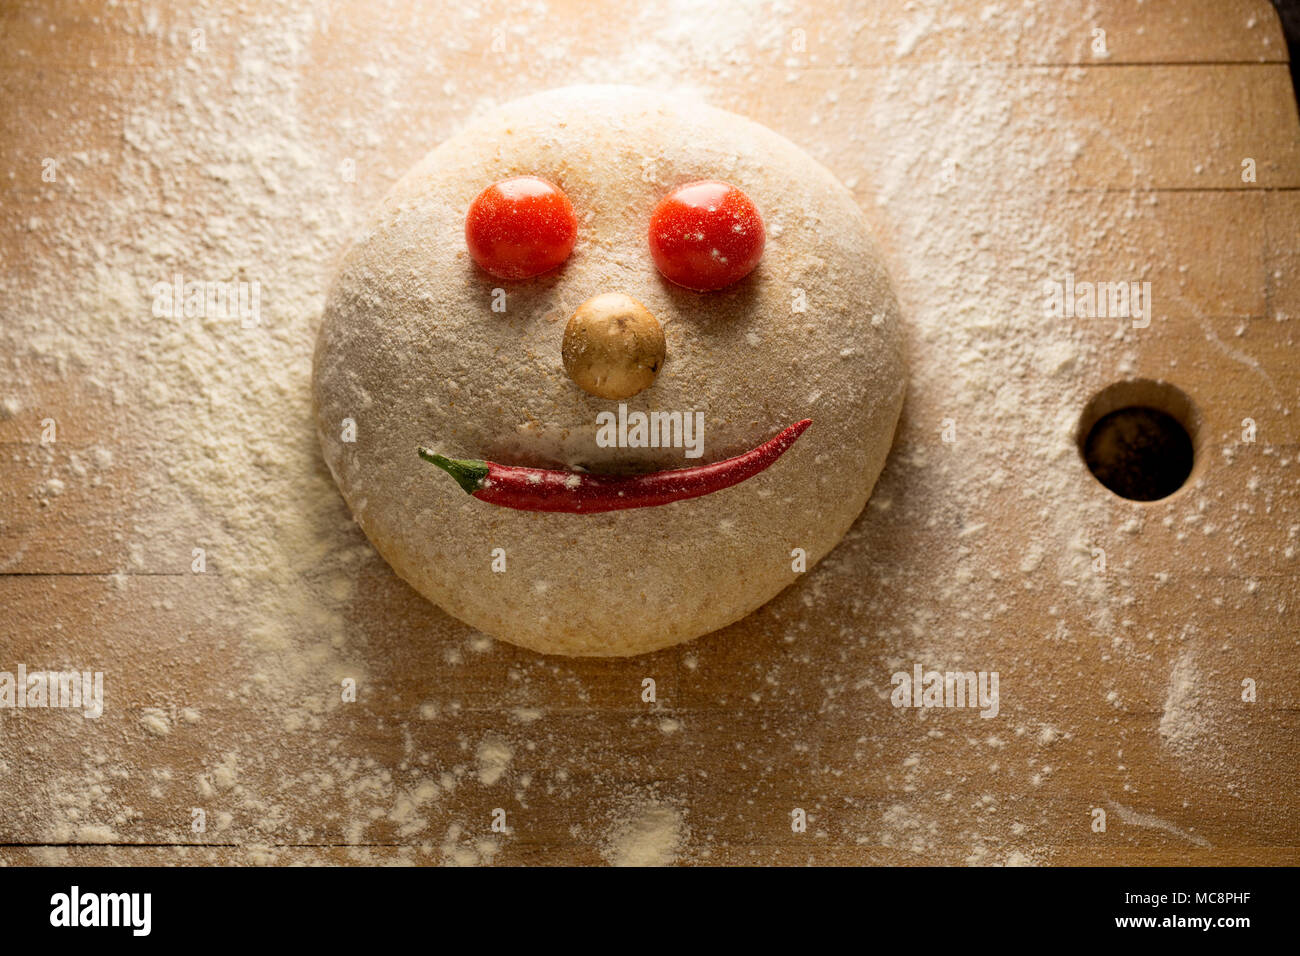 Ball der Teig wie ein glückliches Gesicht, auf einer hölzernen Oberfläche geformt, mit Tomaten und Paprika. Stockfoto